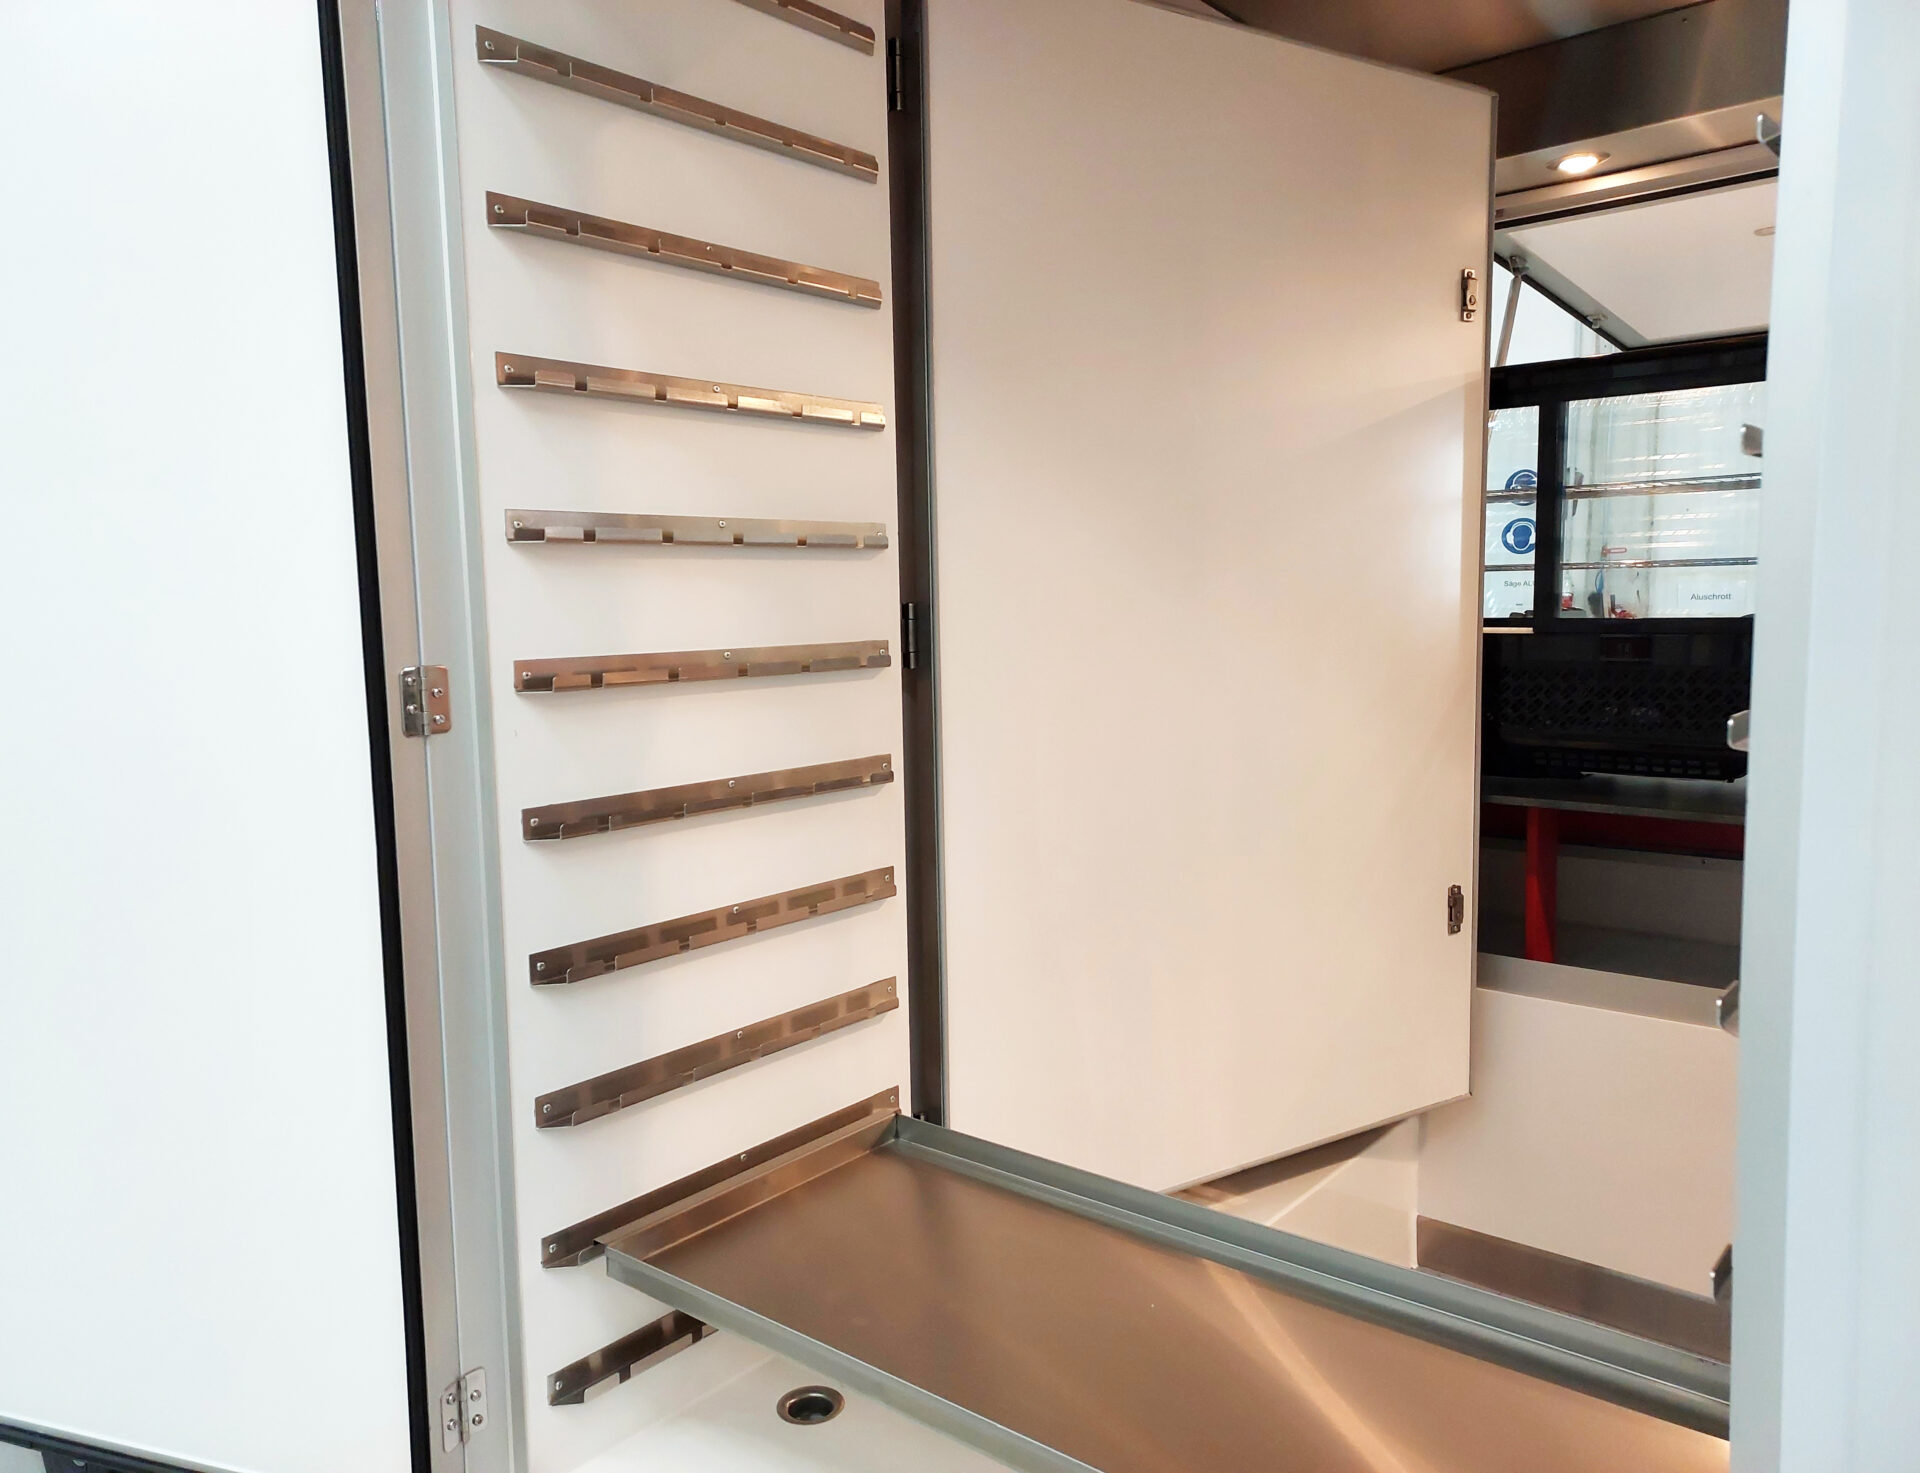 Spießkühlschrank mit Edelstahlwanne und Außen- und Innentür in einem Hähnchengrillwagen